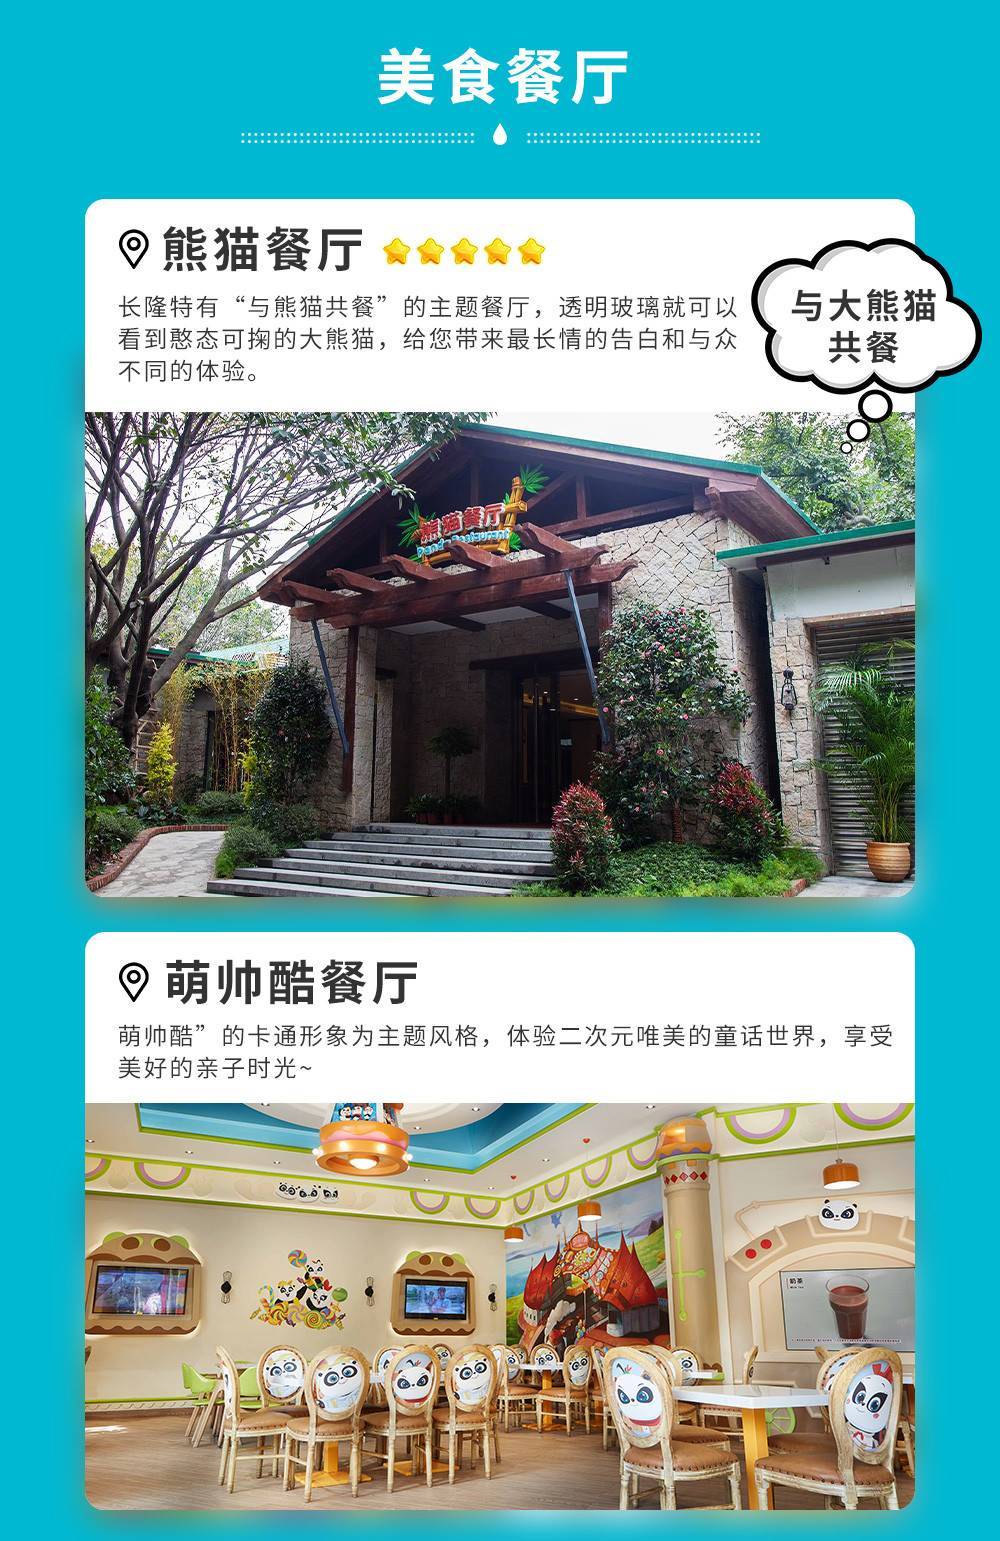 【3月女士特惠】广州长隆野生动物世界特定日特惠女士票（3.1-3.31）